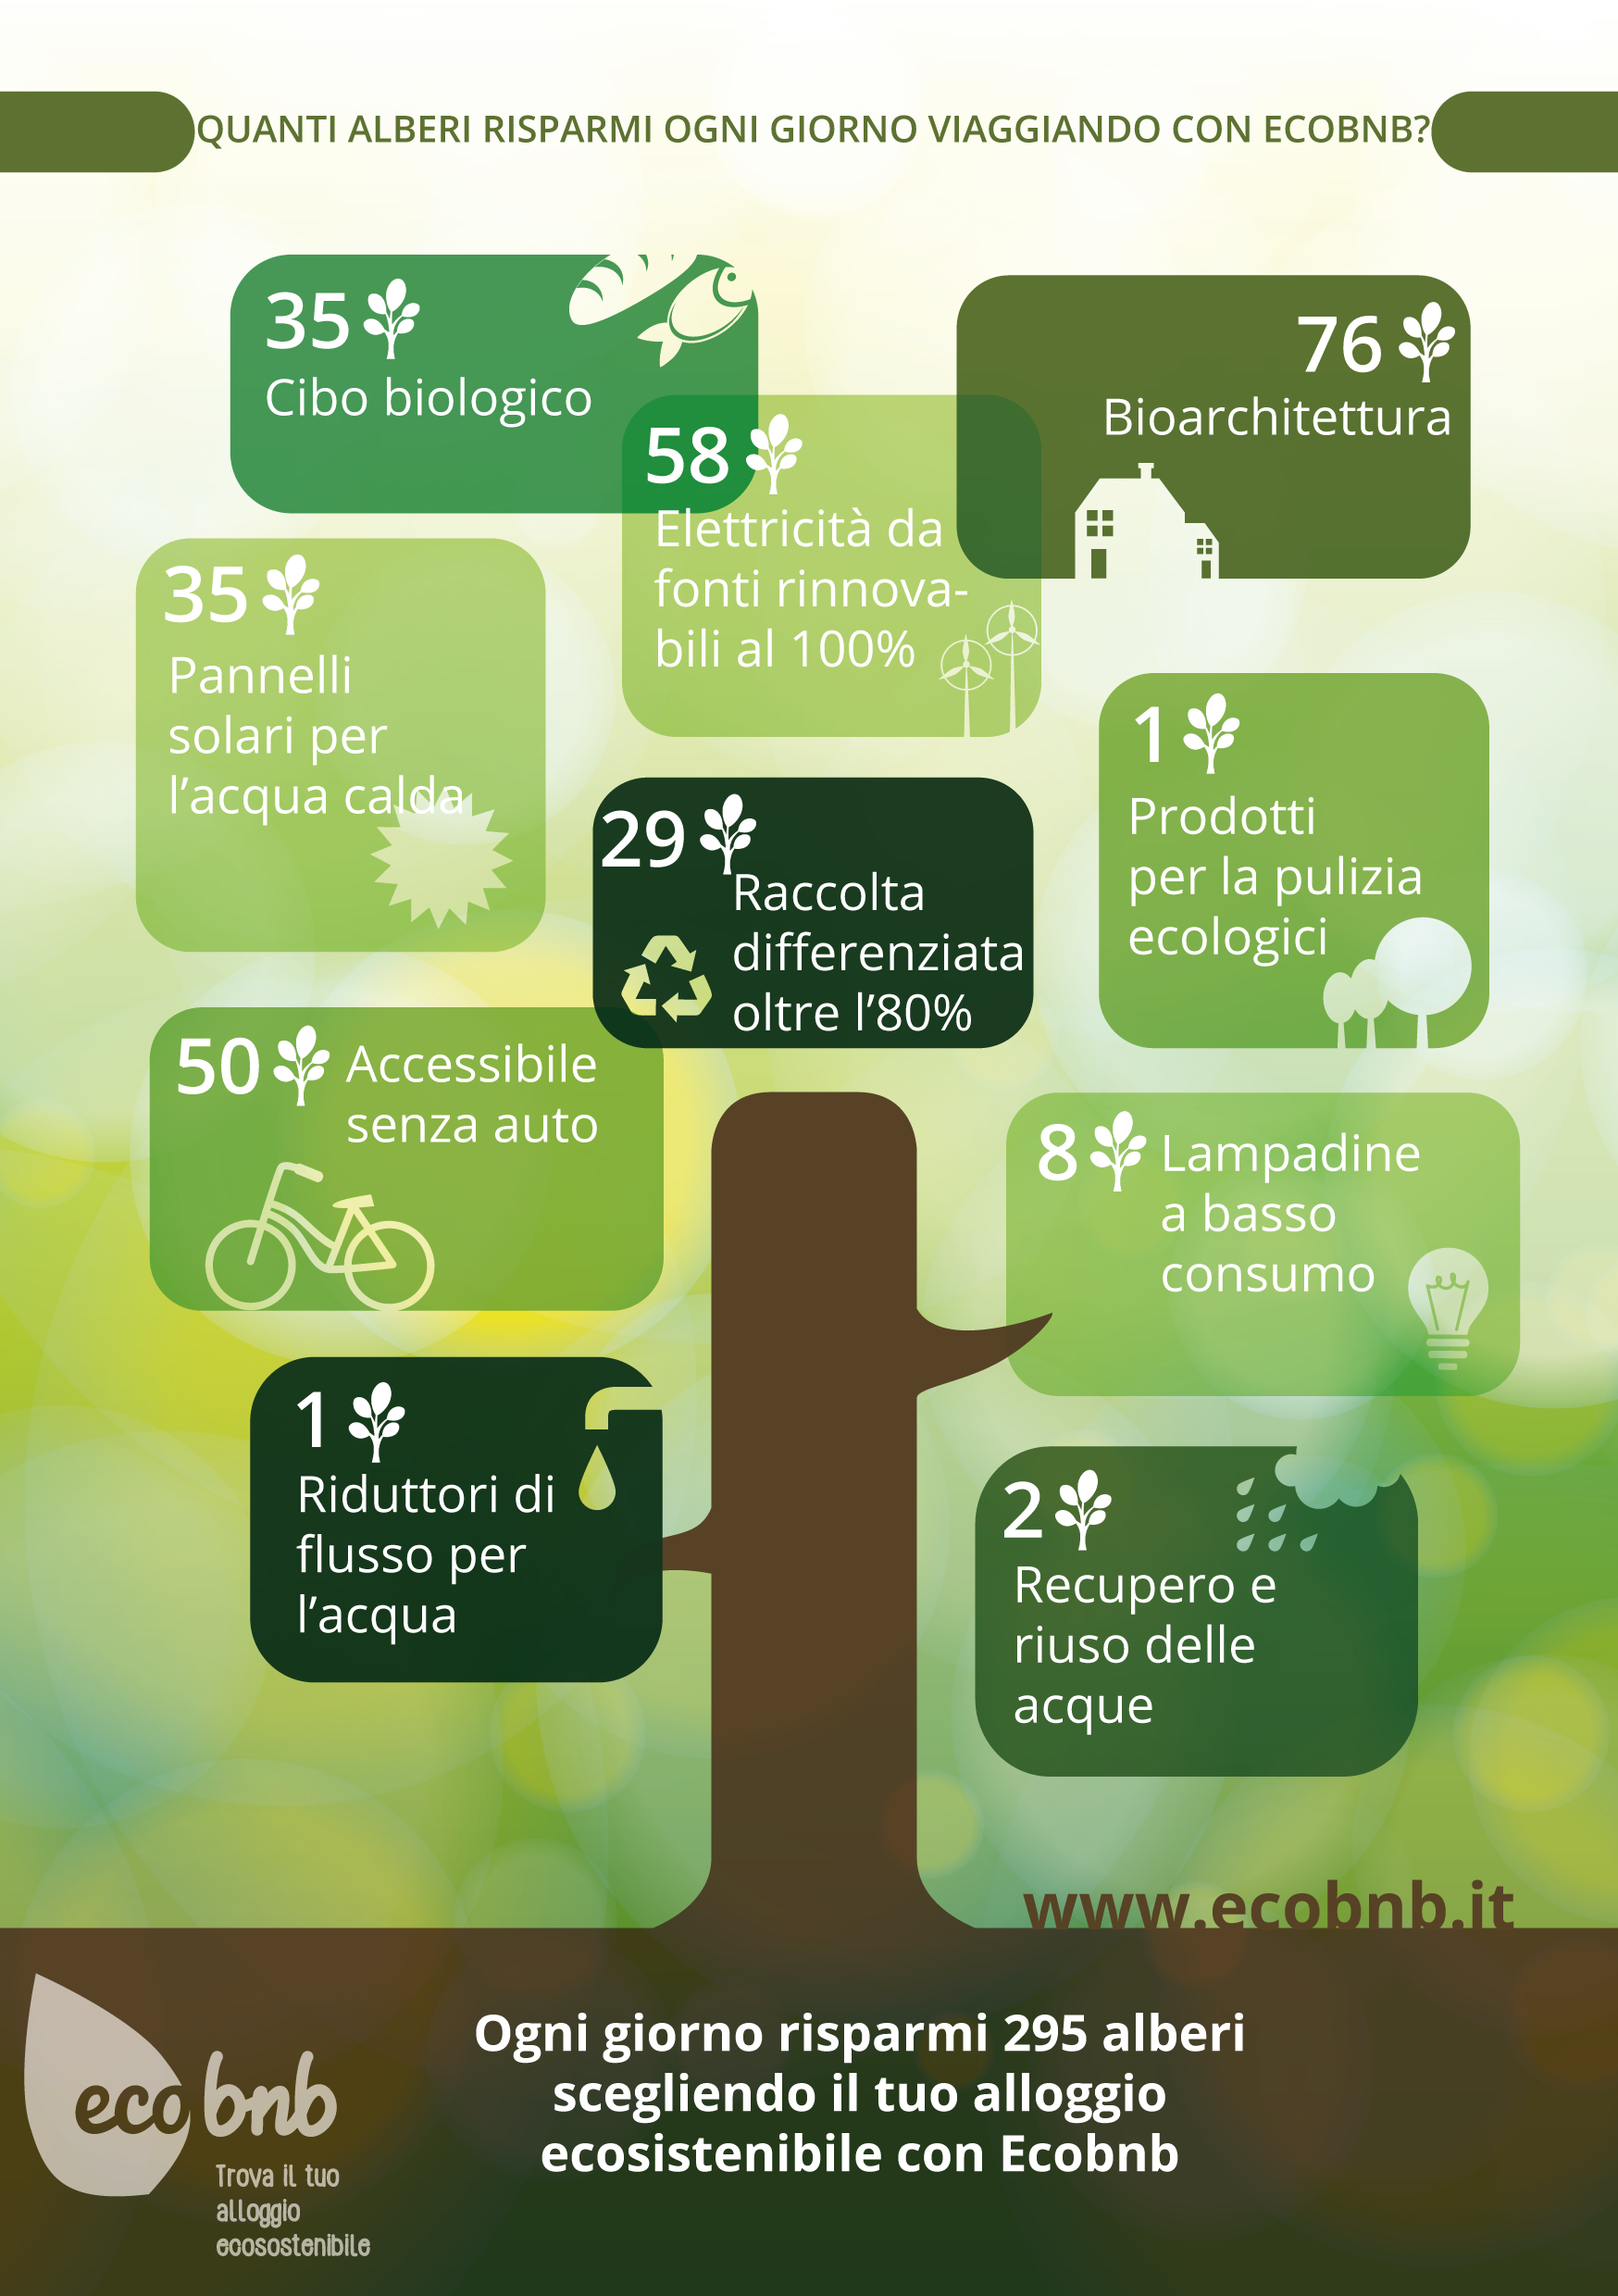 Quanti Alberi risparmi viaggiando con Ecobnb - Infografica